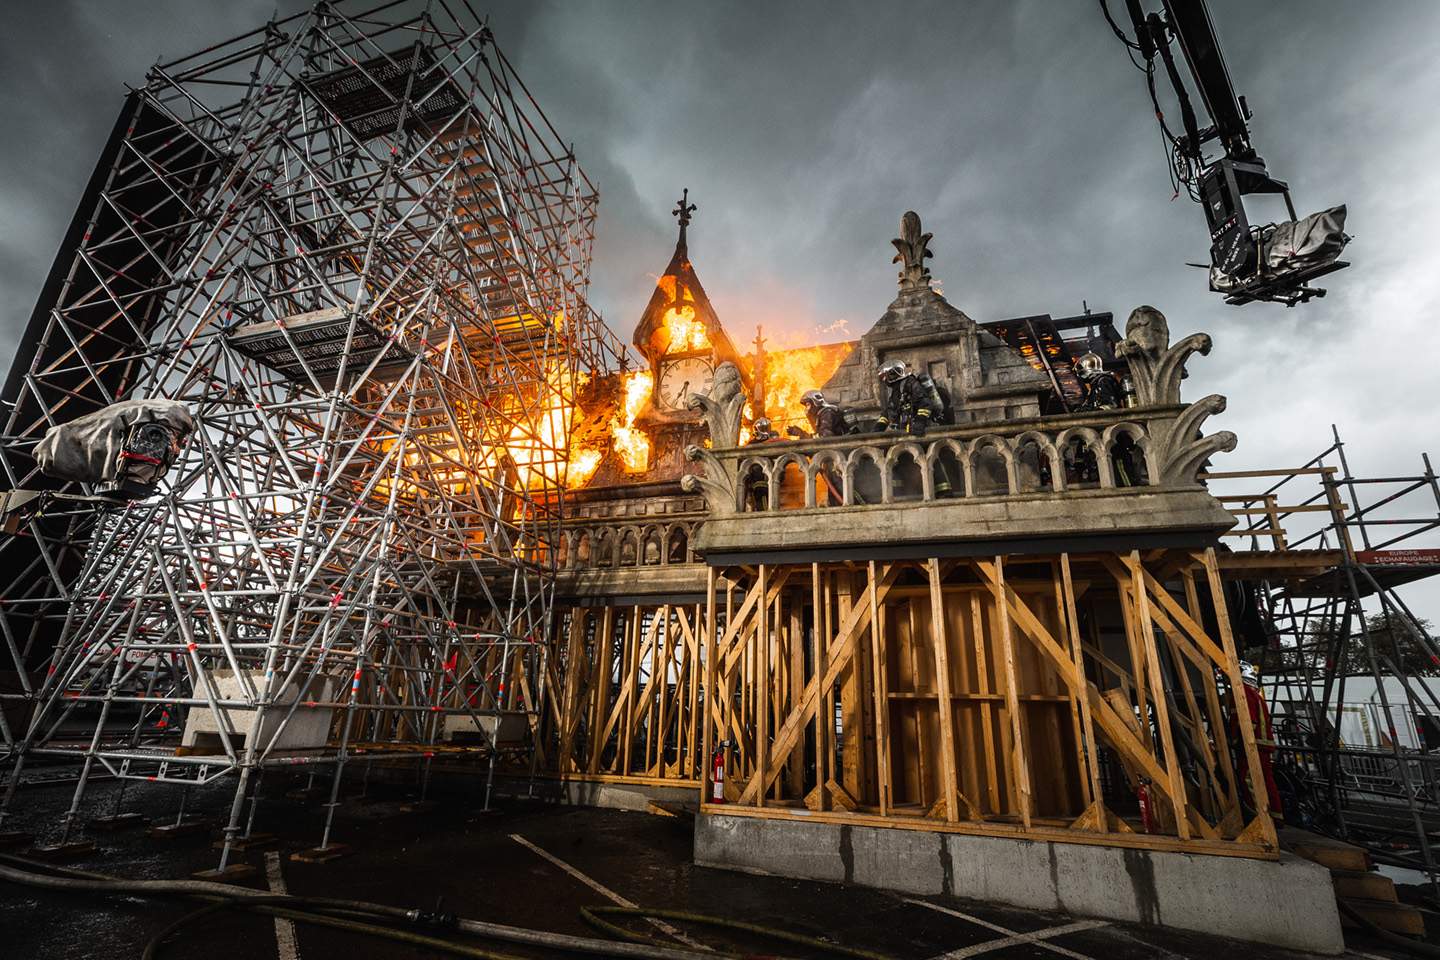 Entretiens à propos de la préparation et du tournage de "Notre-Dame brûle", de Jean-Jacques Annaud